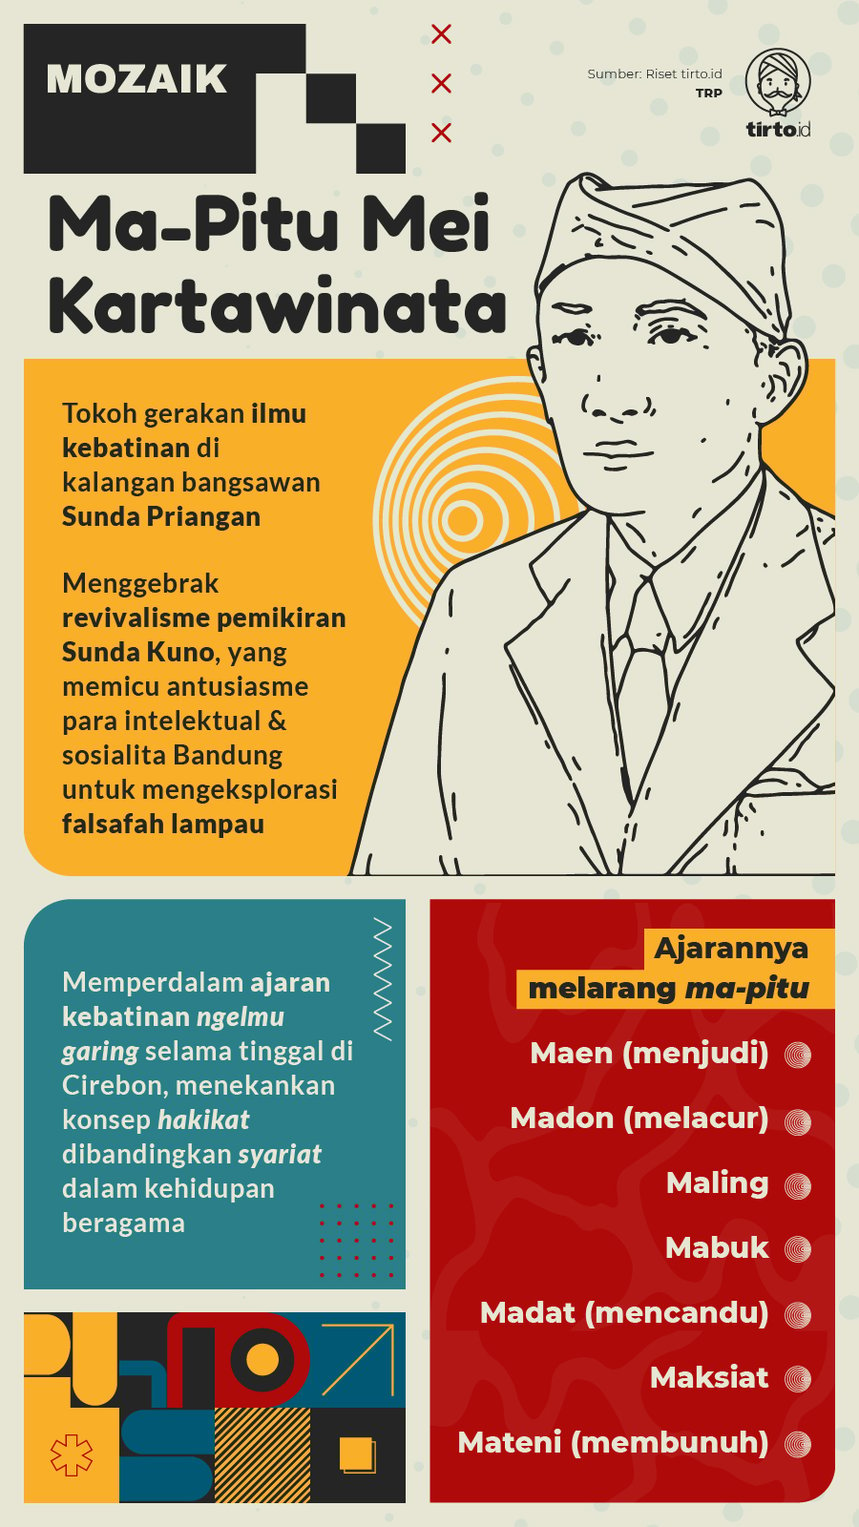 Infografik Mozaik Ma-Pitu Mei Kartawinata